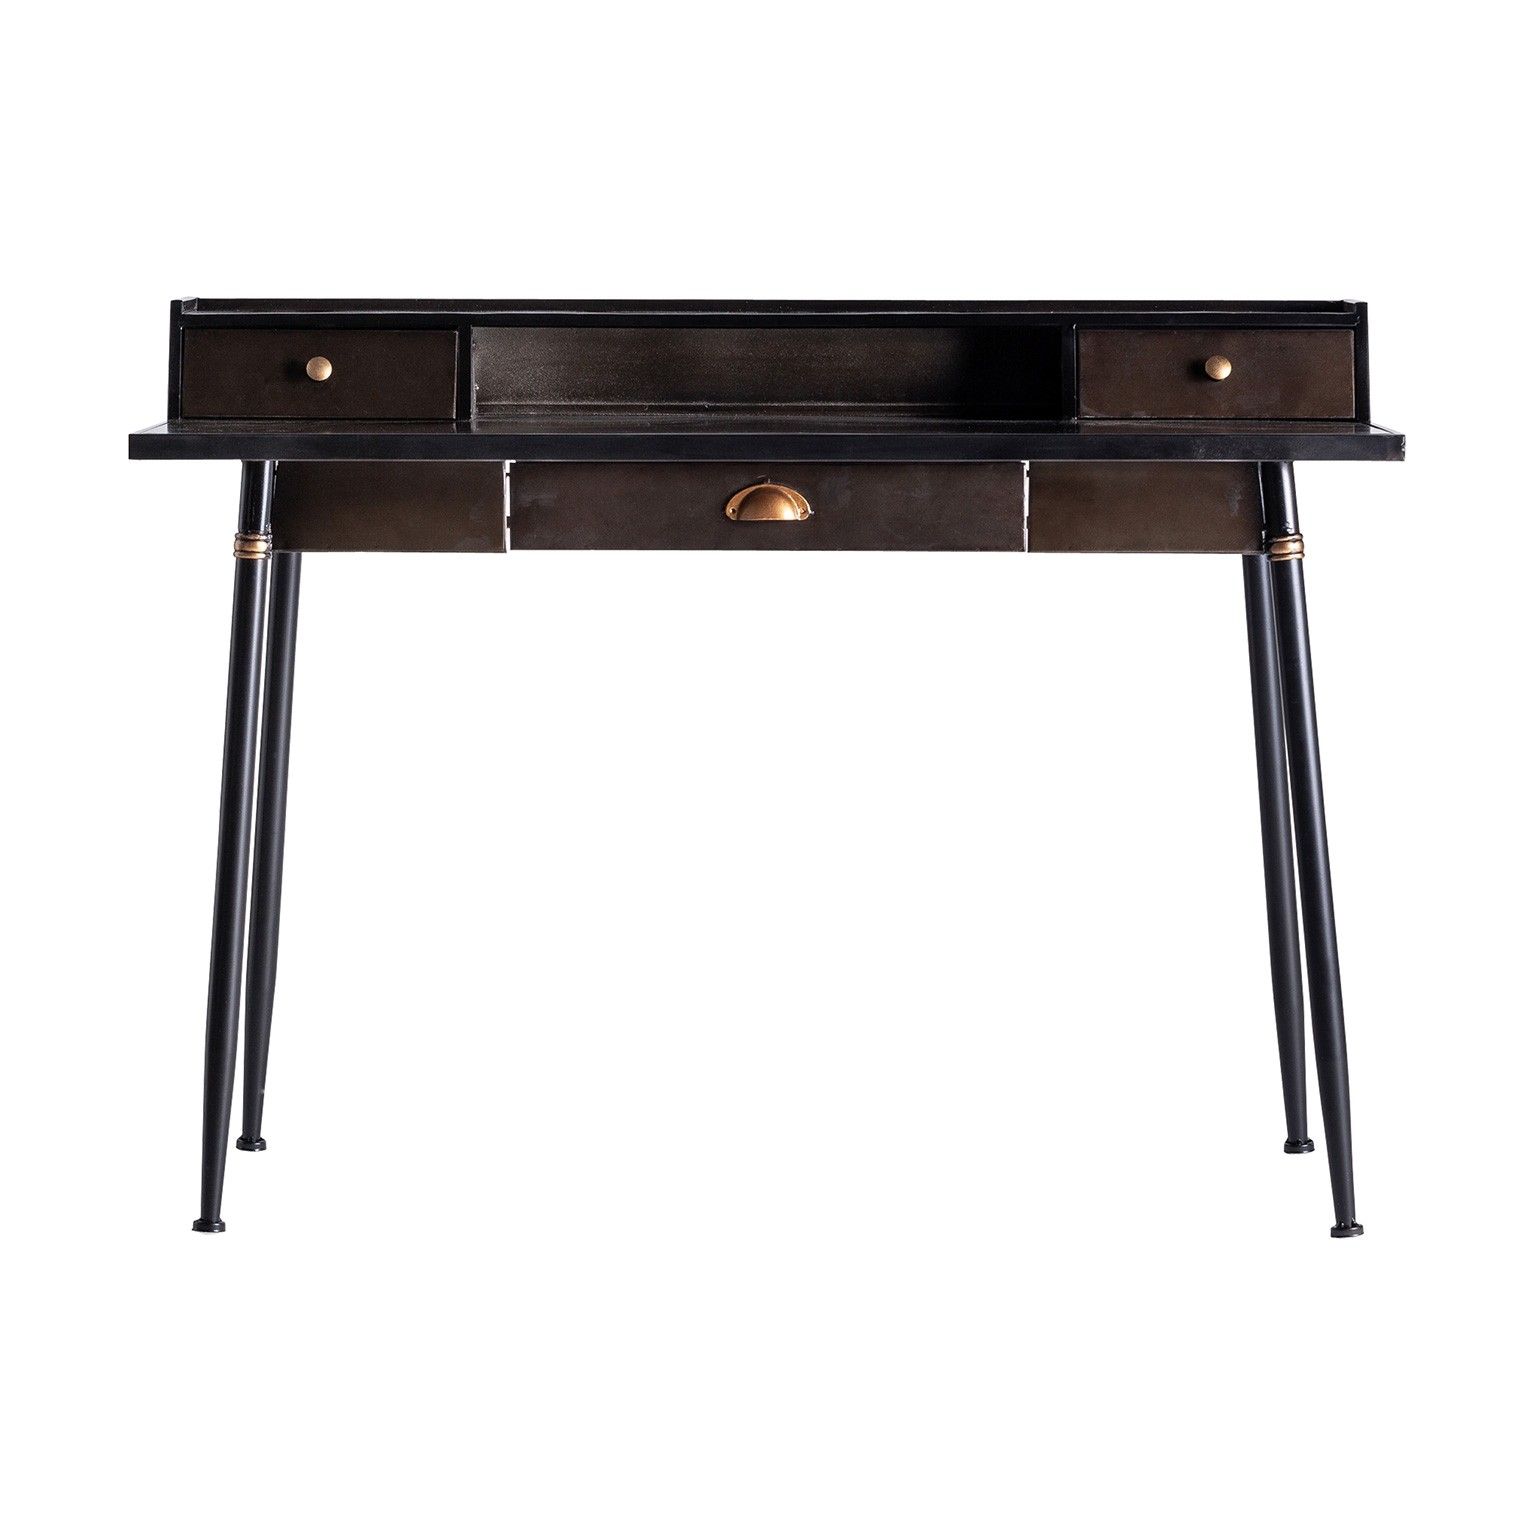 Estila Industriální psací stolek do kanceláře Islip z kovu v tmavě hnědé barvě se zásuvkami 120cm